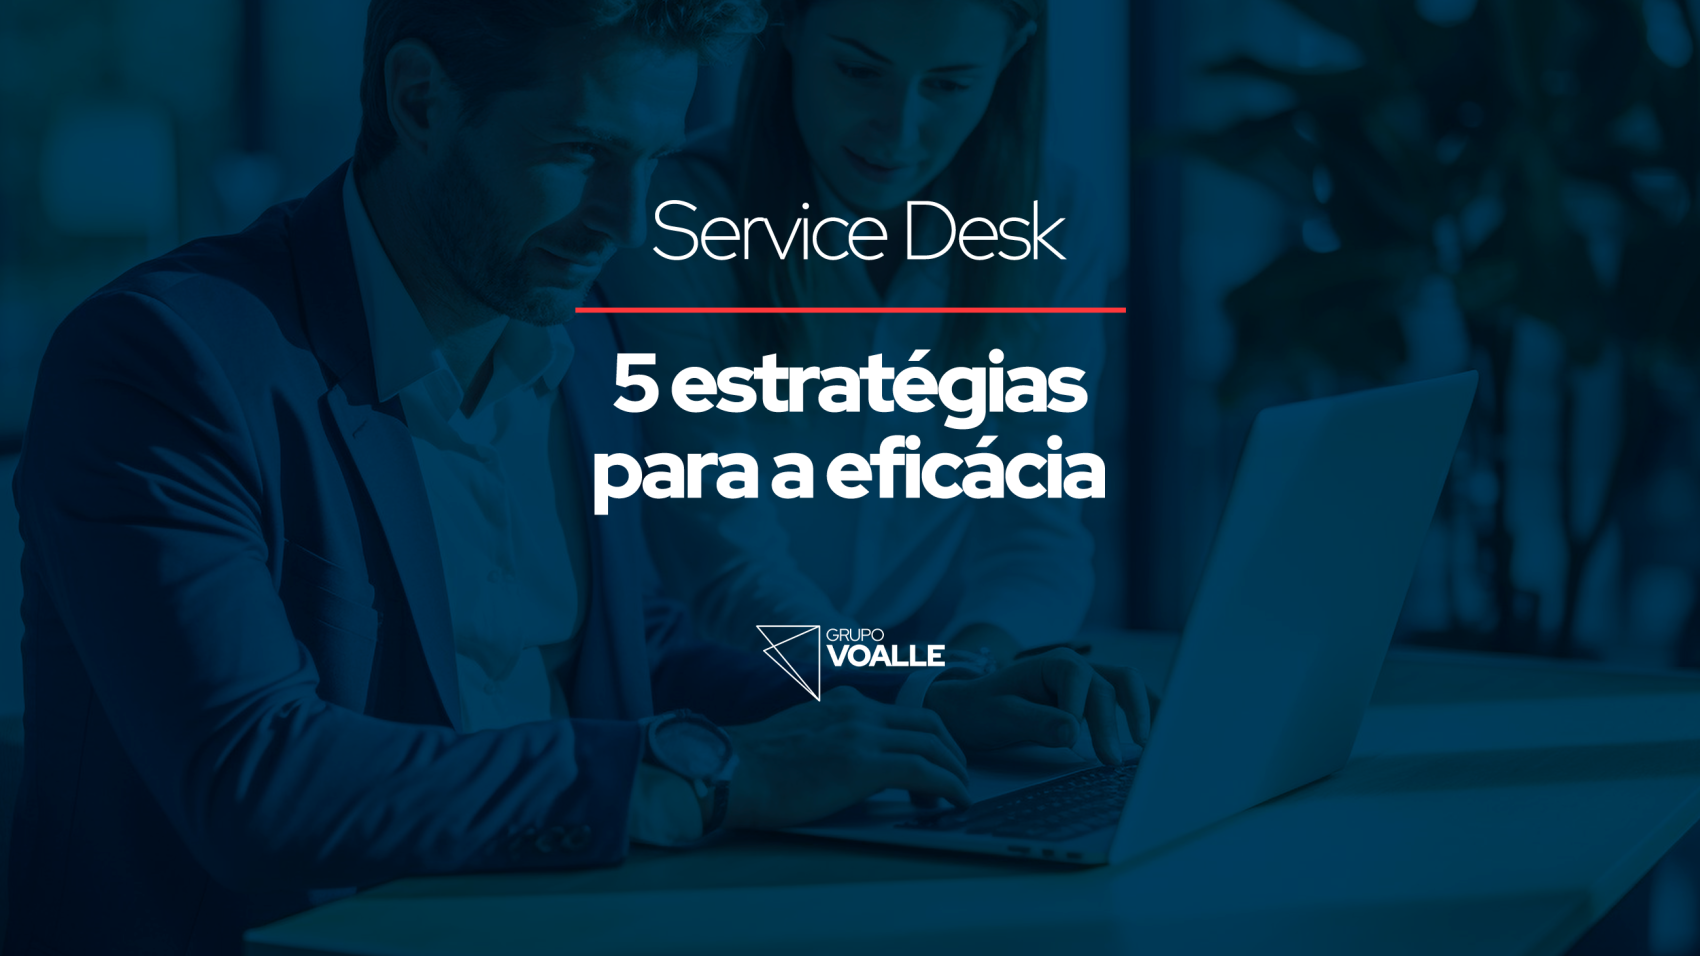 Service Desk: 5 estratégias para a eficácia